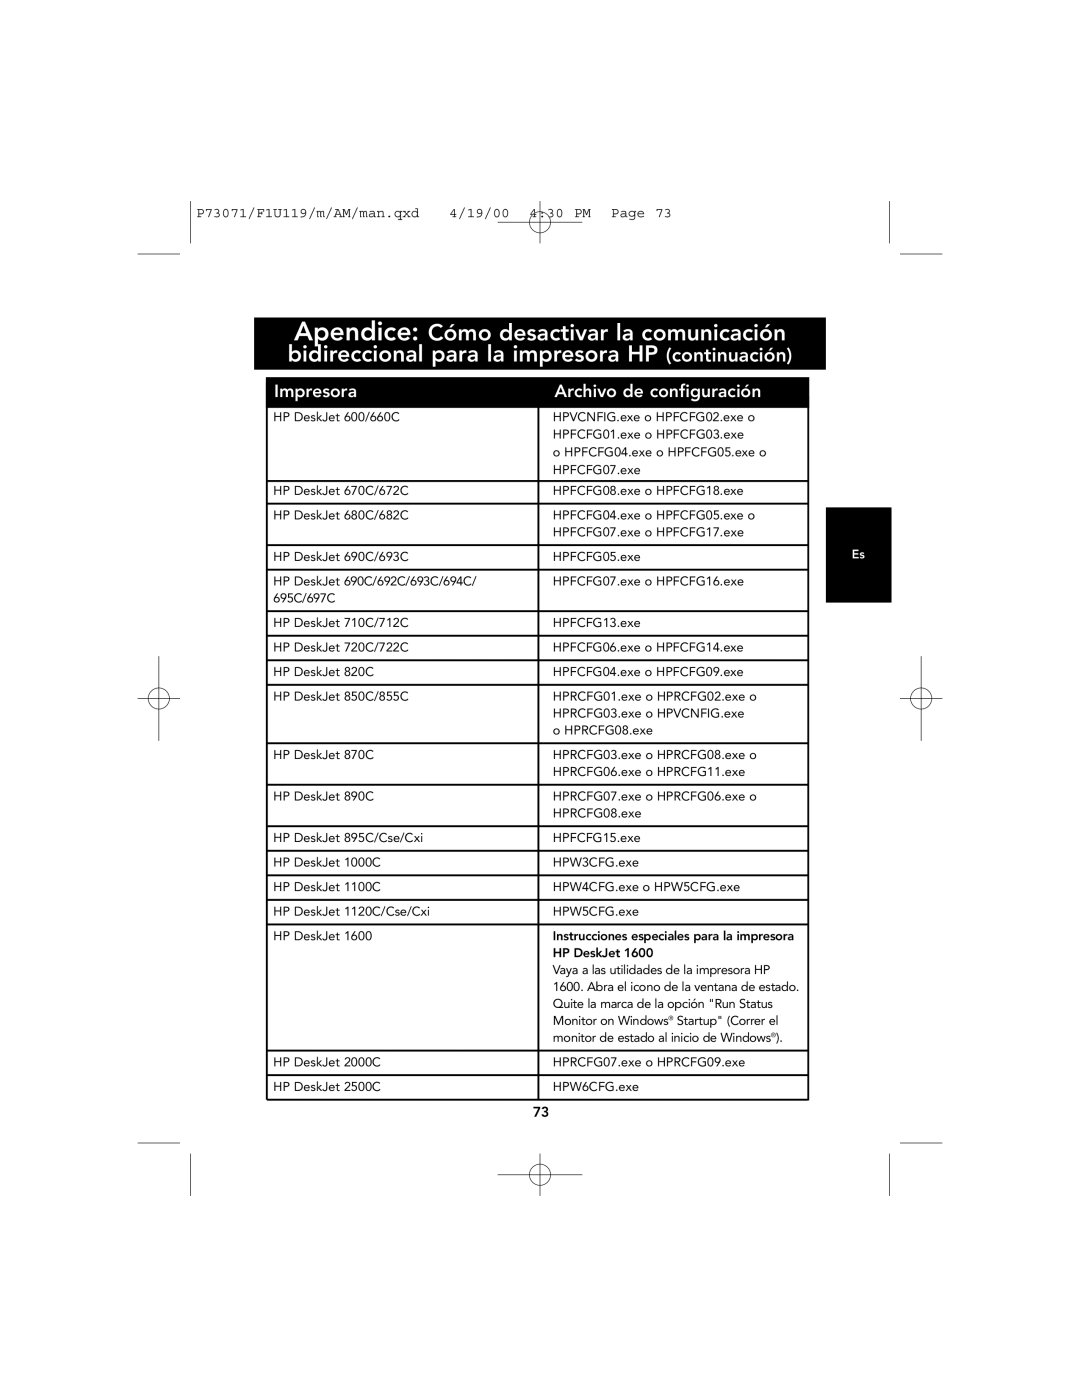 Belkin user manual Impresora, Archivo de configuración, P73071/F1U119/m/AM/man.qxd, 4/19/00 430 PM Page 